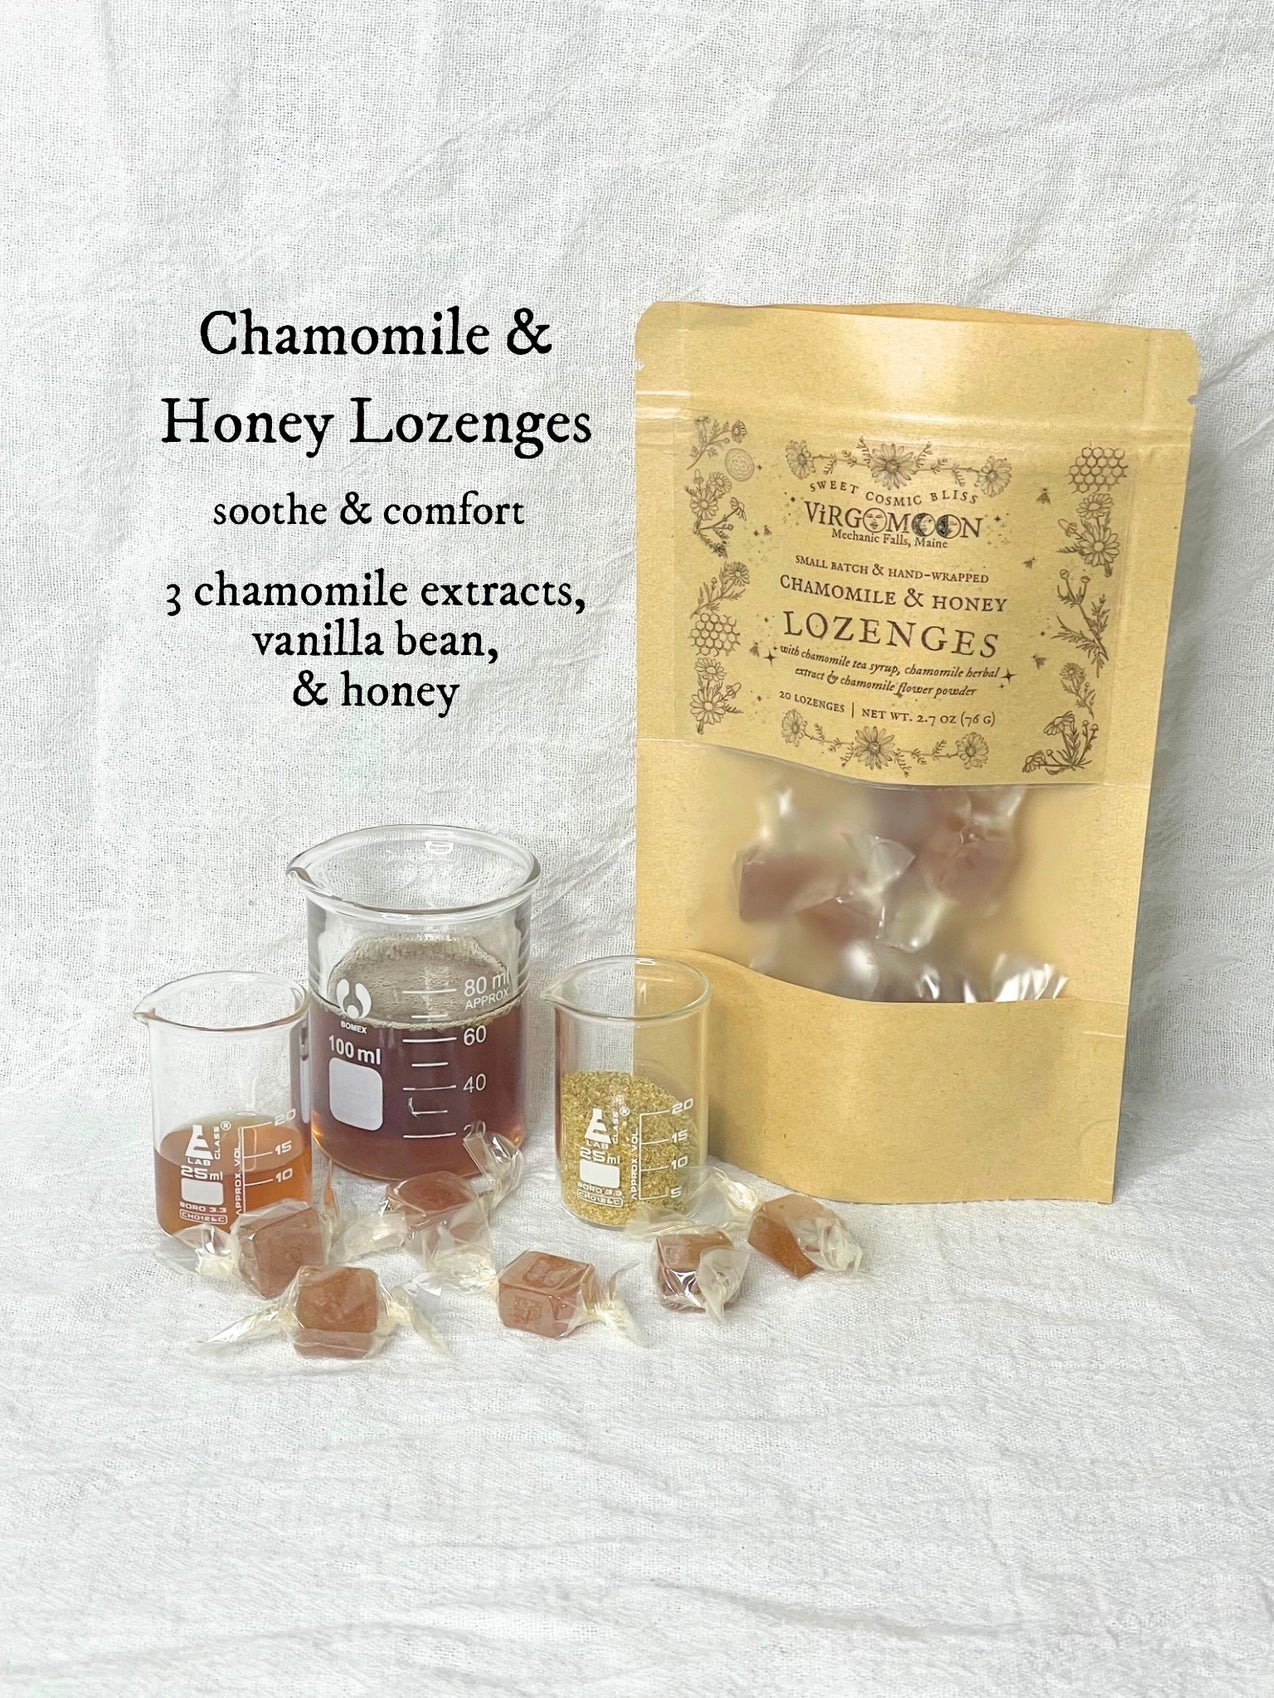 Chamomile & Honey Lozenges